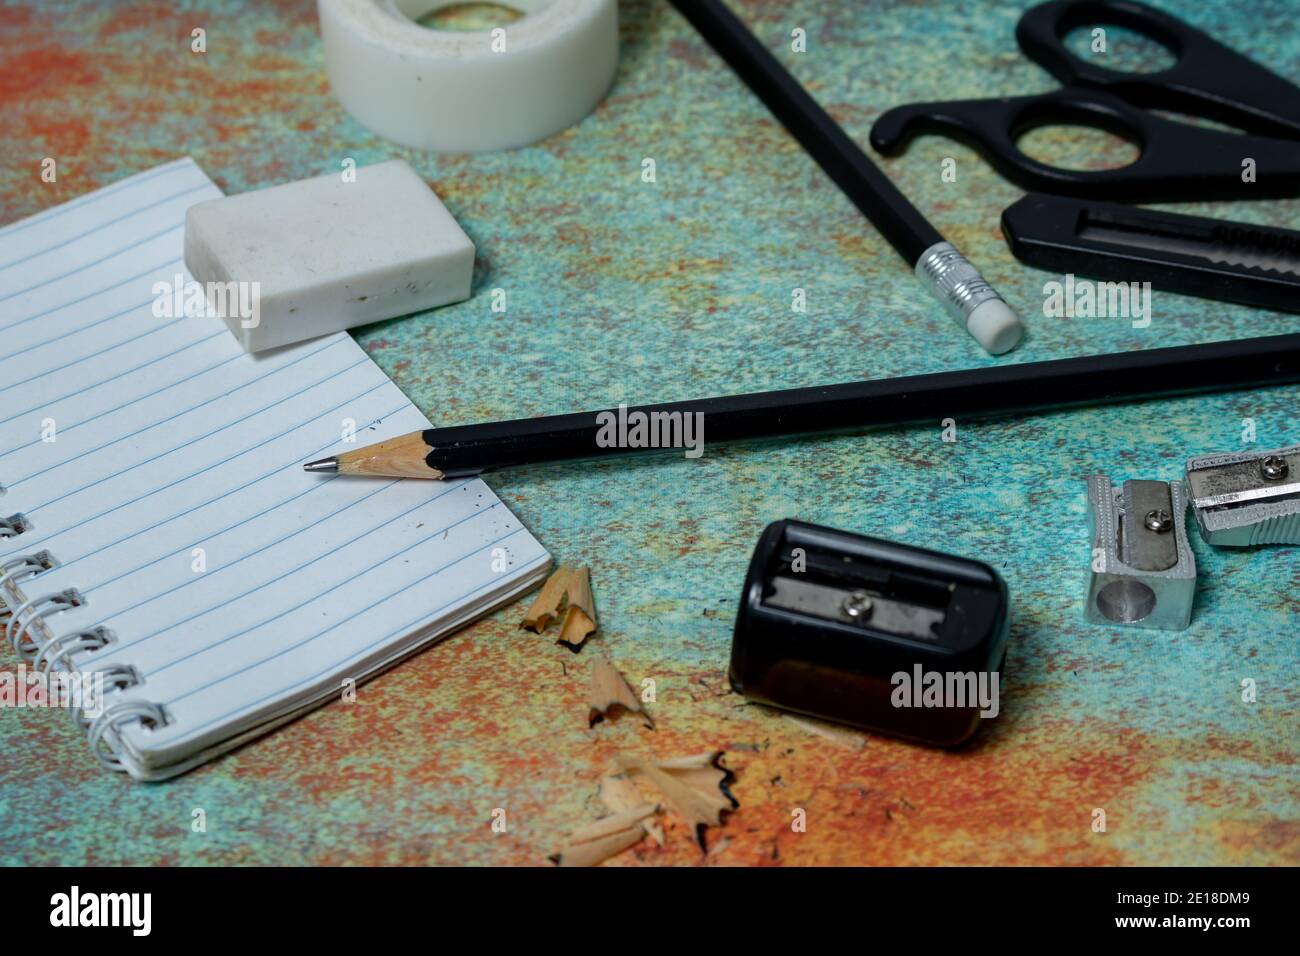 Kleines Notizbuch, schwarzer Bleistift, Radiergummi und andere Schreibwaren auf einer rustikalen Oberfläche. Konzept der Arbeitselemente. Stockfoto